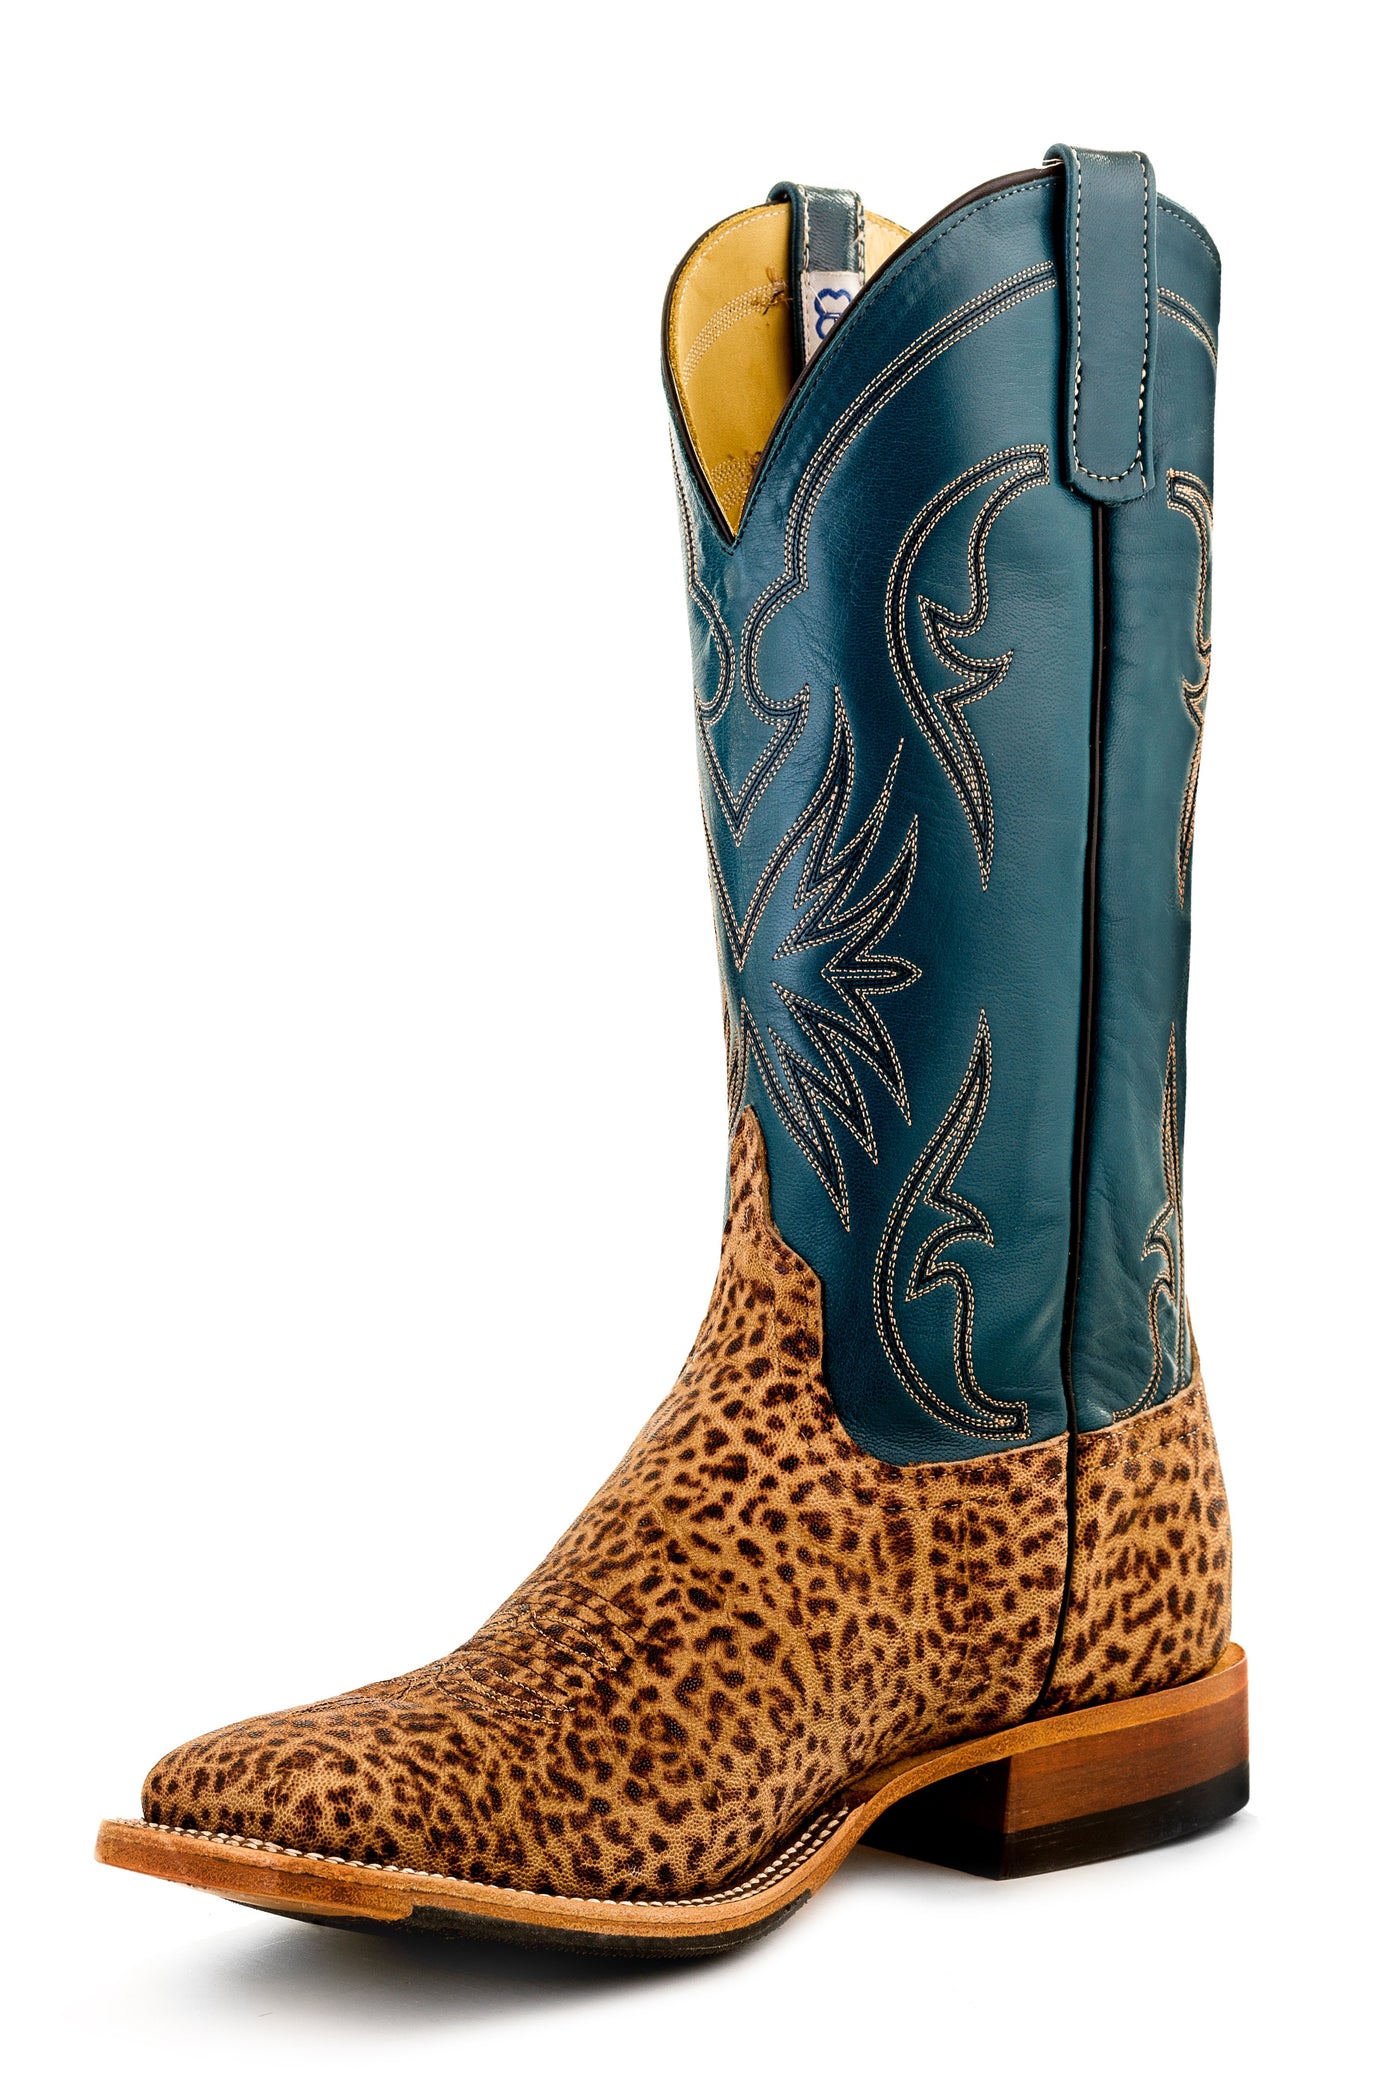 anderson cowboy boots